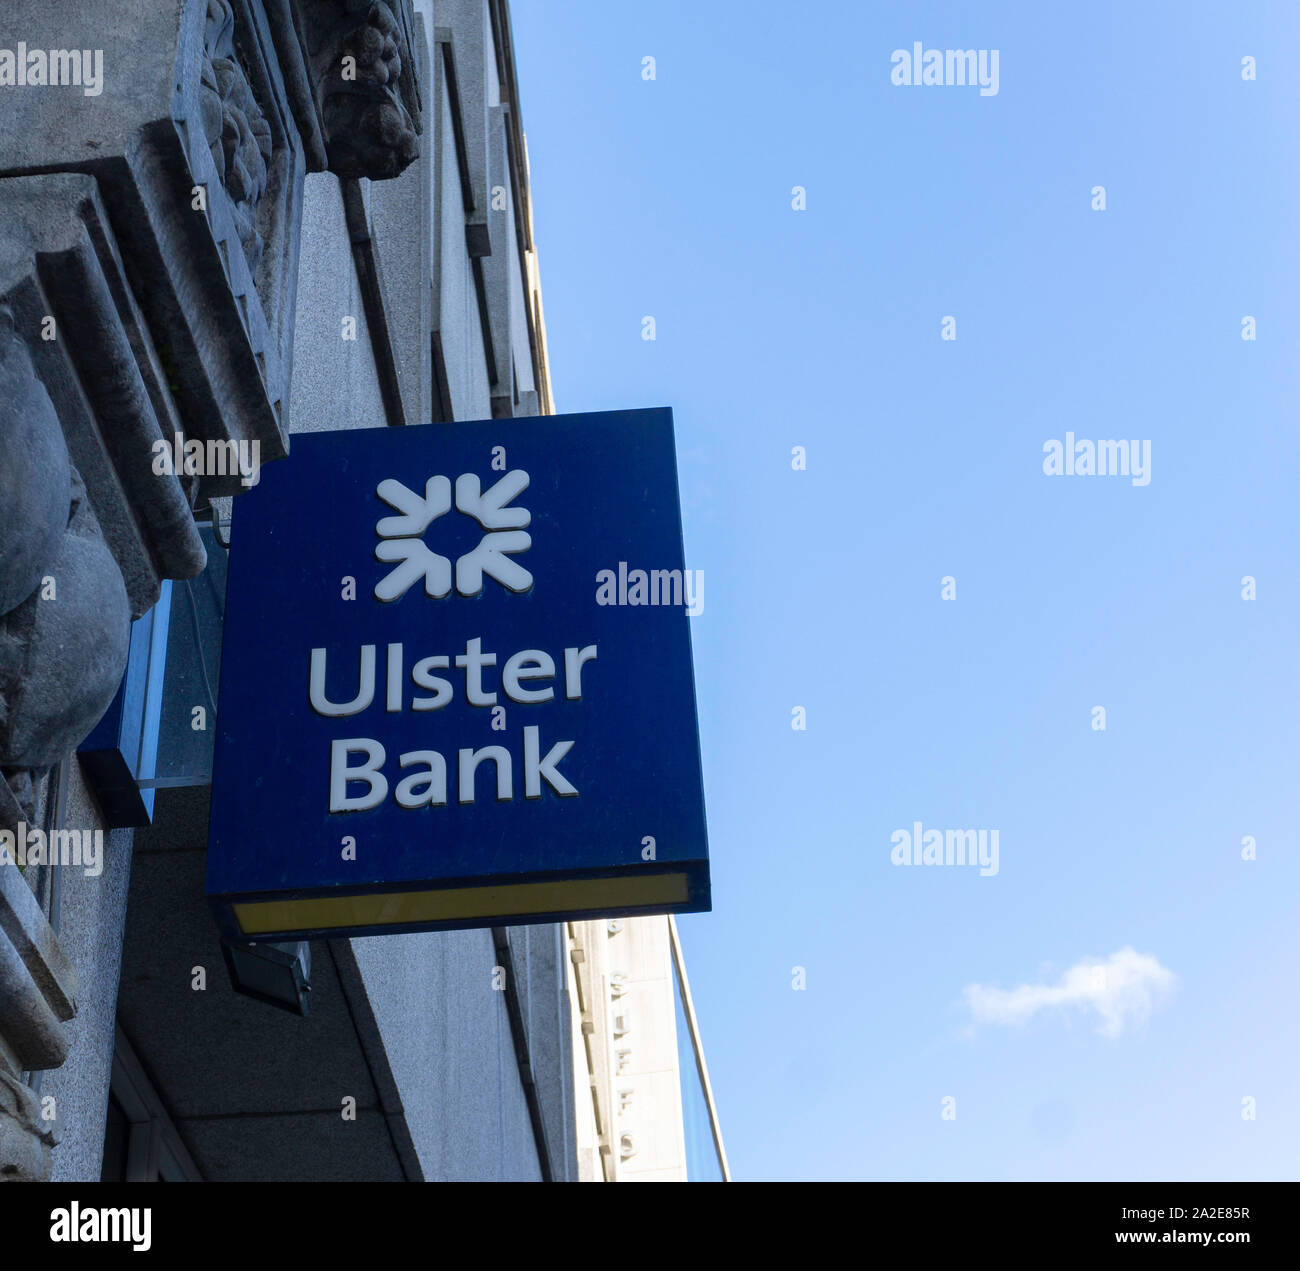 Ulster Bank, un signe/symbole de la Ulster Bank, qui fait partie du groupe Royal Bank of Scotland. Banque D'Images